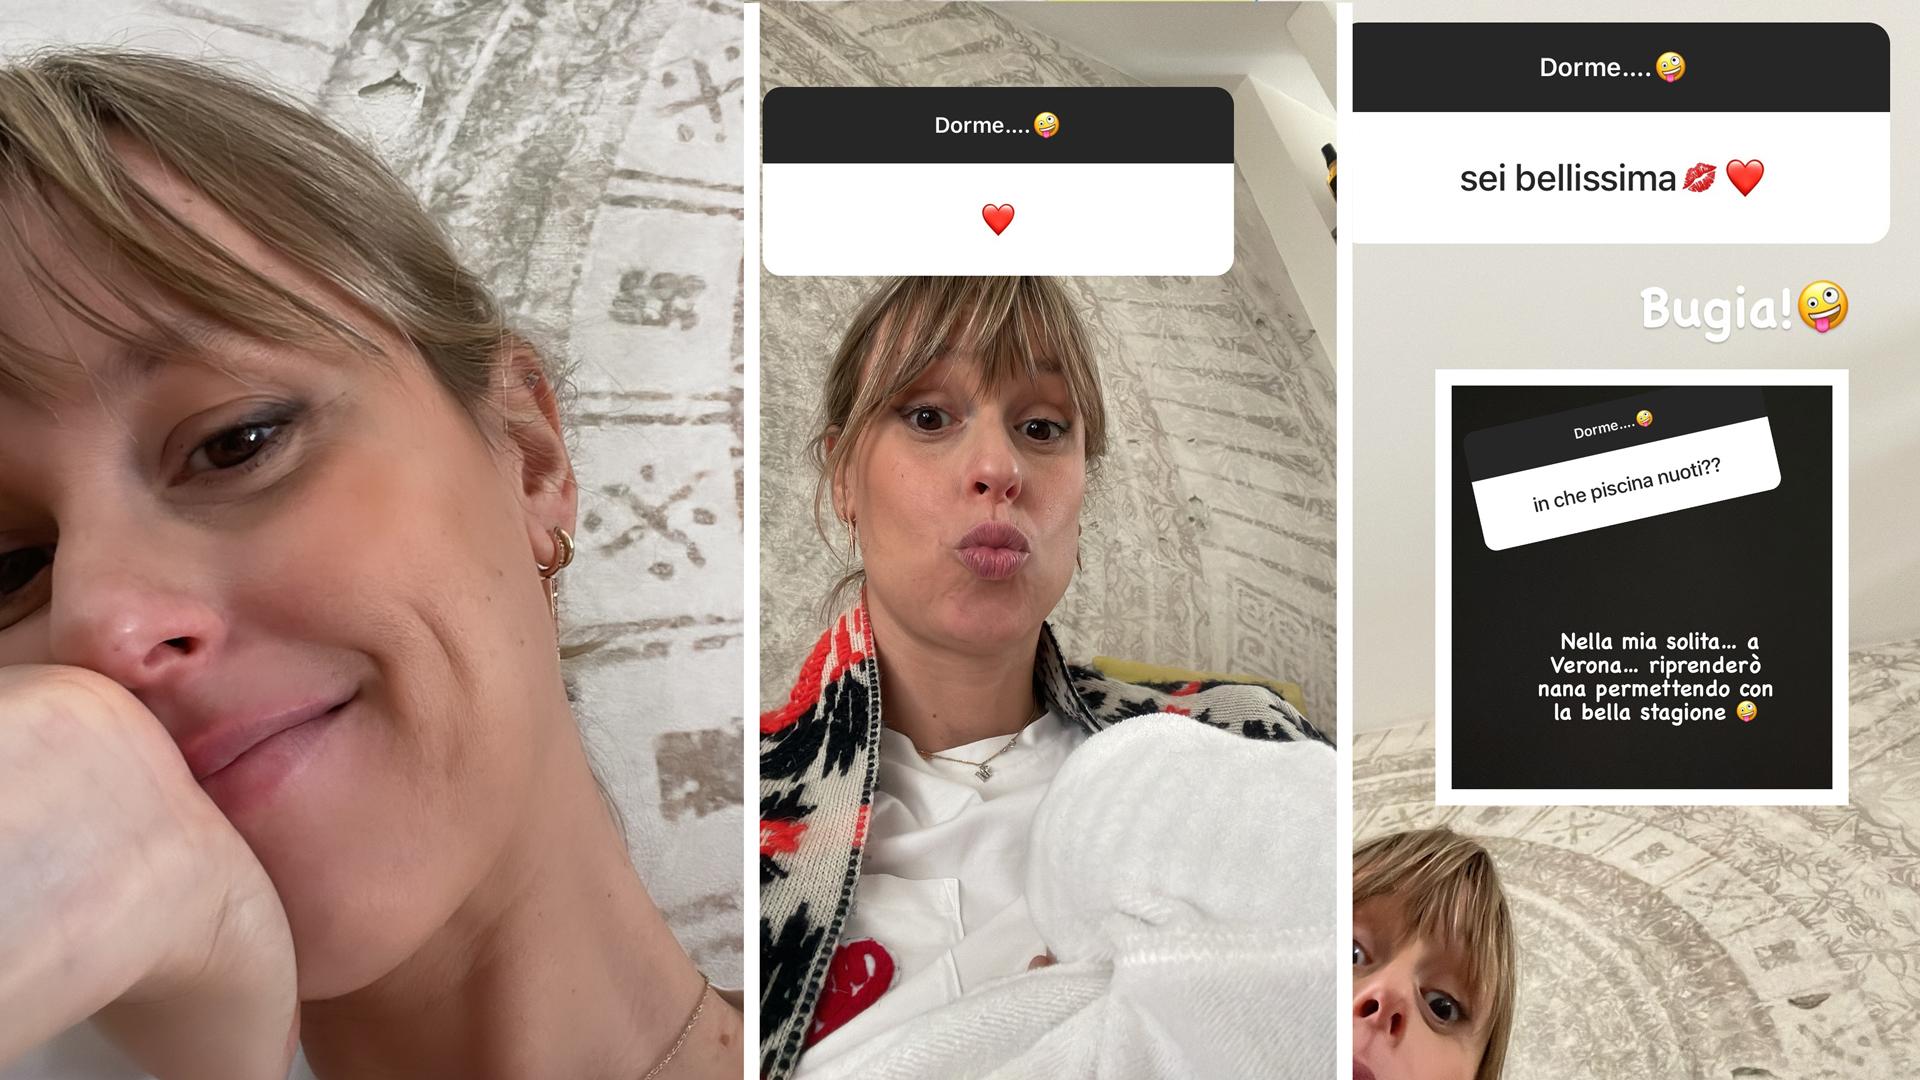 Federica Pellegrini su Instagram risponde alle curiosità dei fan, le risposte si possono leggere nelle varie immagini pubblicate in una storia